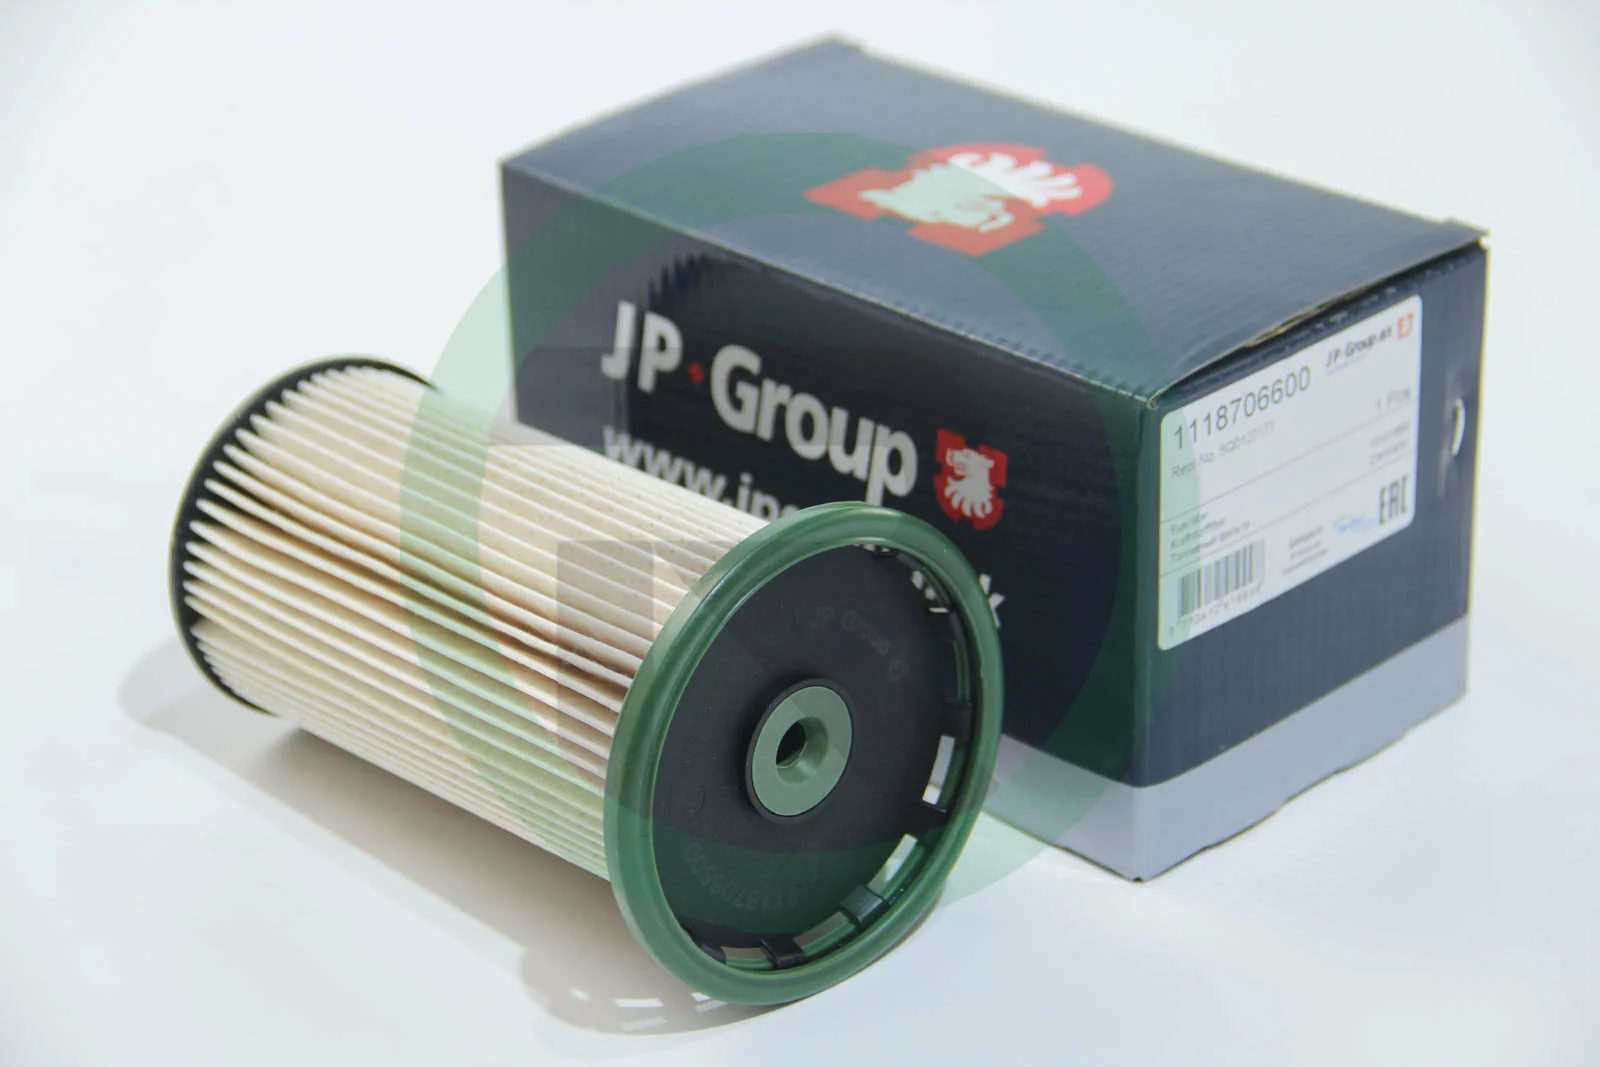 Топливный фильтр на Skoda Octavia A7  JP Group 1118706600.